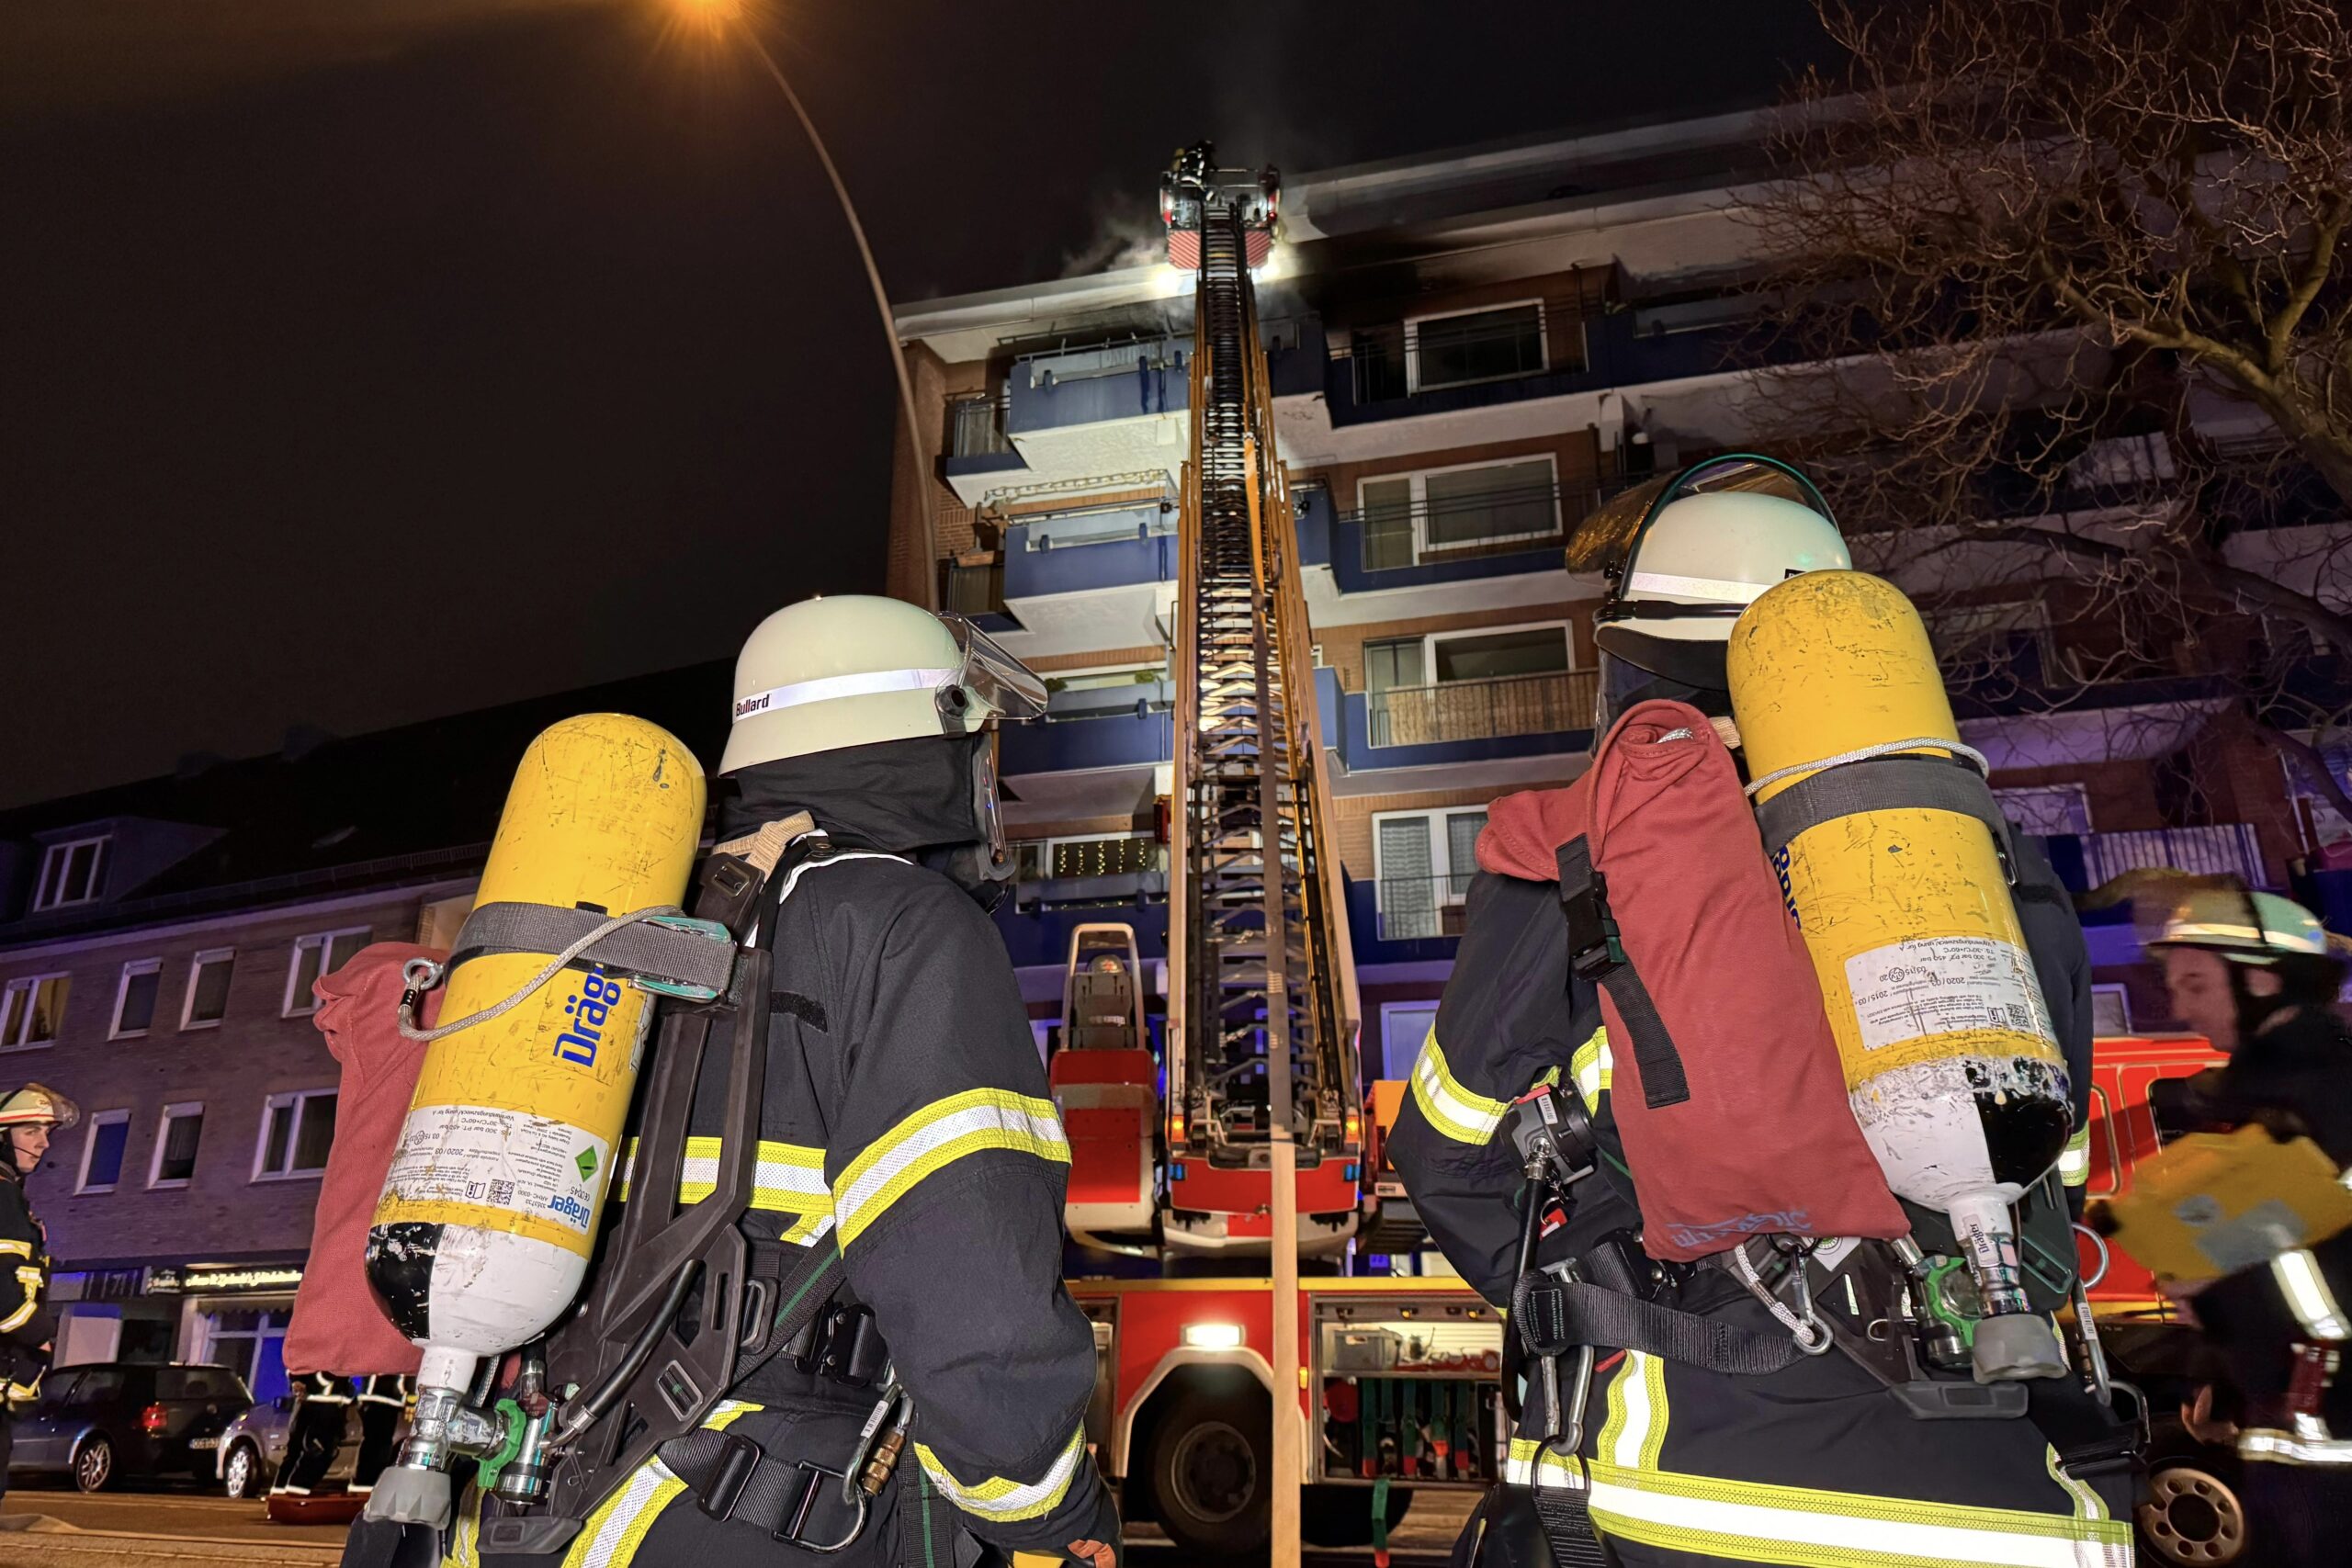 Wohnung in Billstedt in Flammen – Feuerwehr rettet 5 Personen darunte zwei Kinder